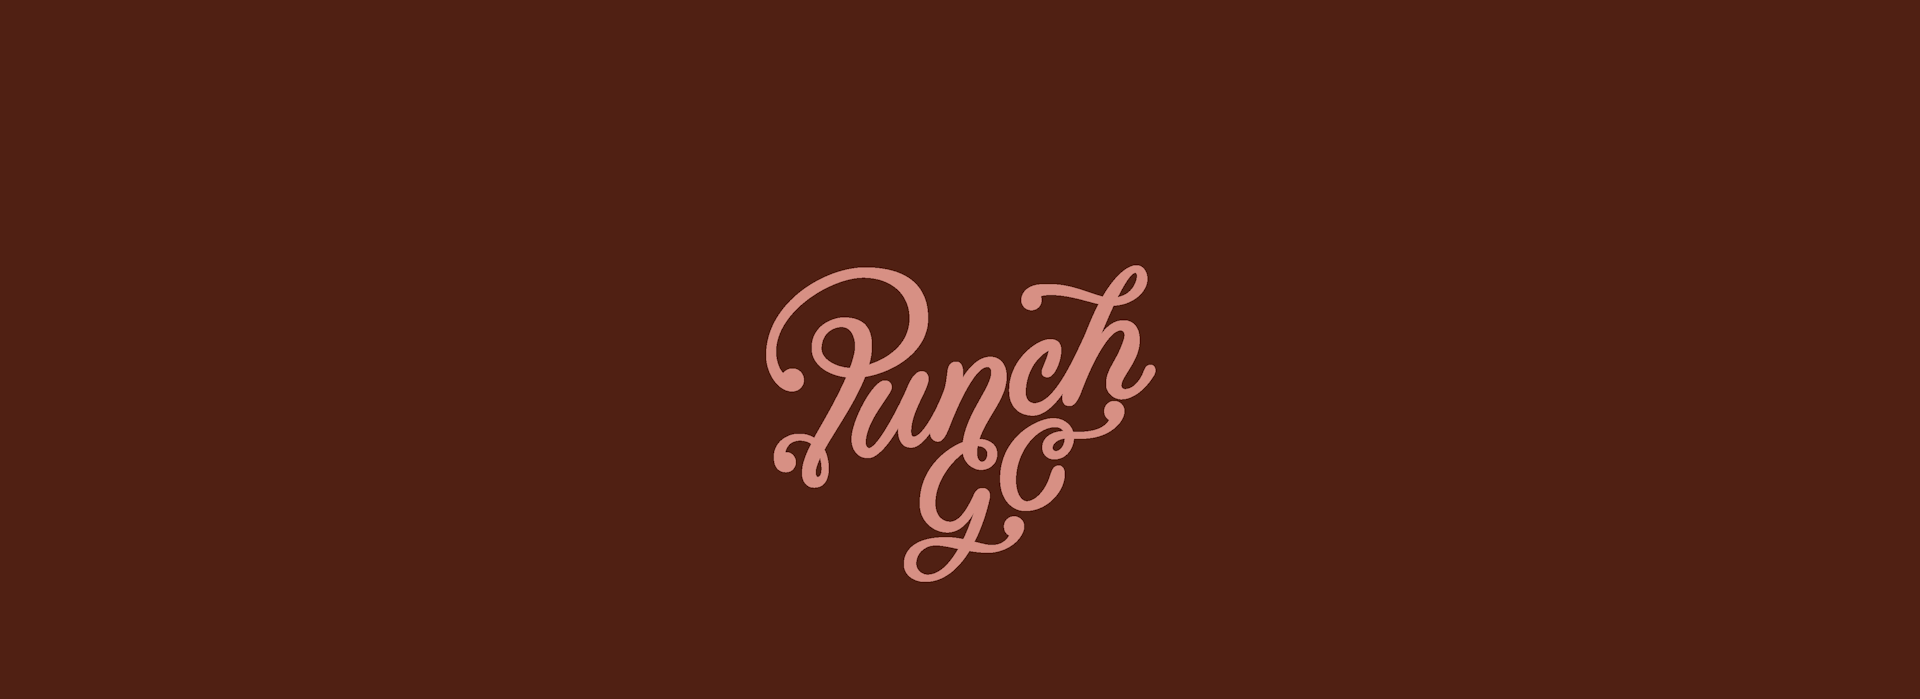 Punch-GC Wordmark